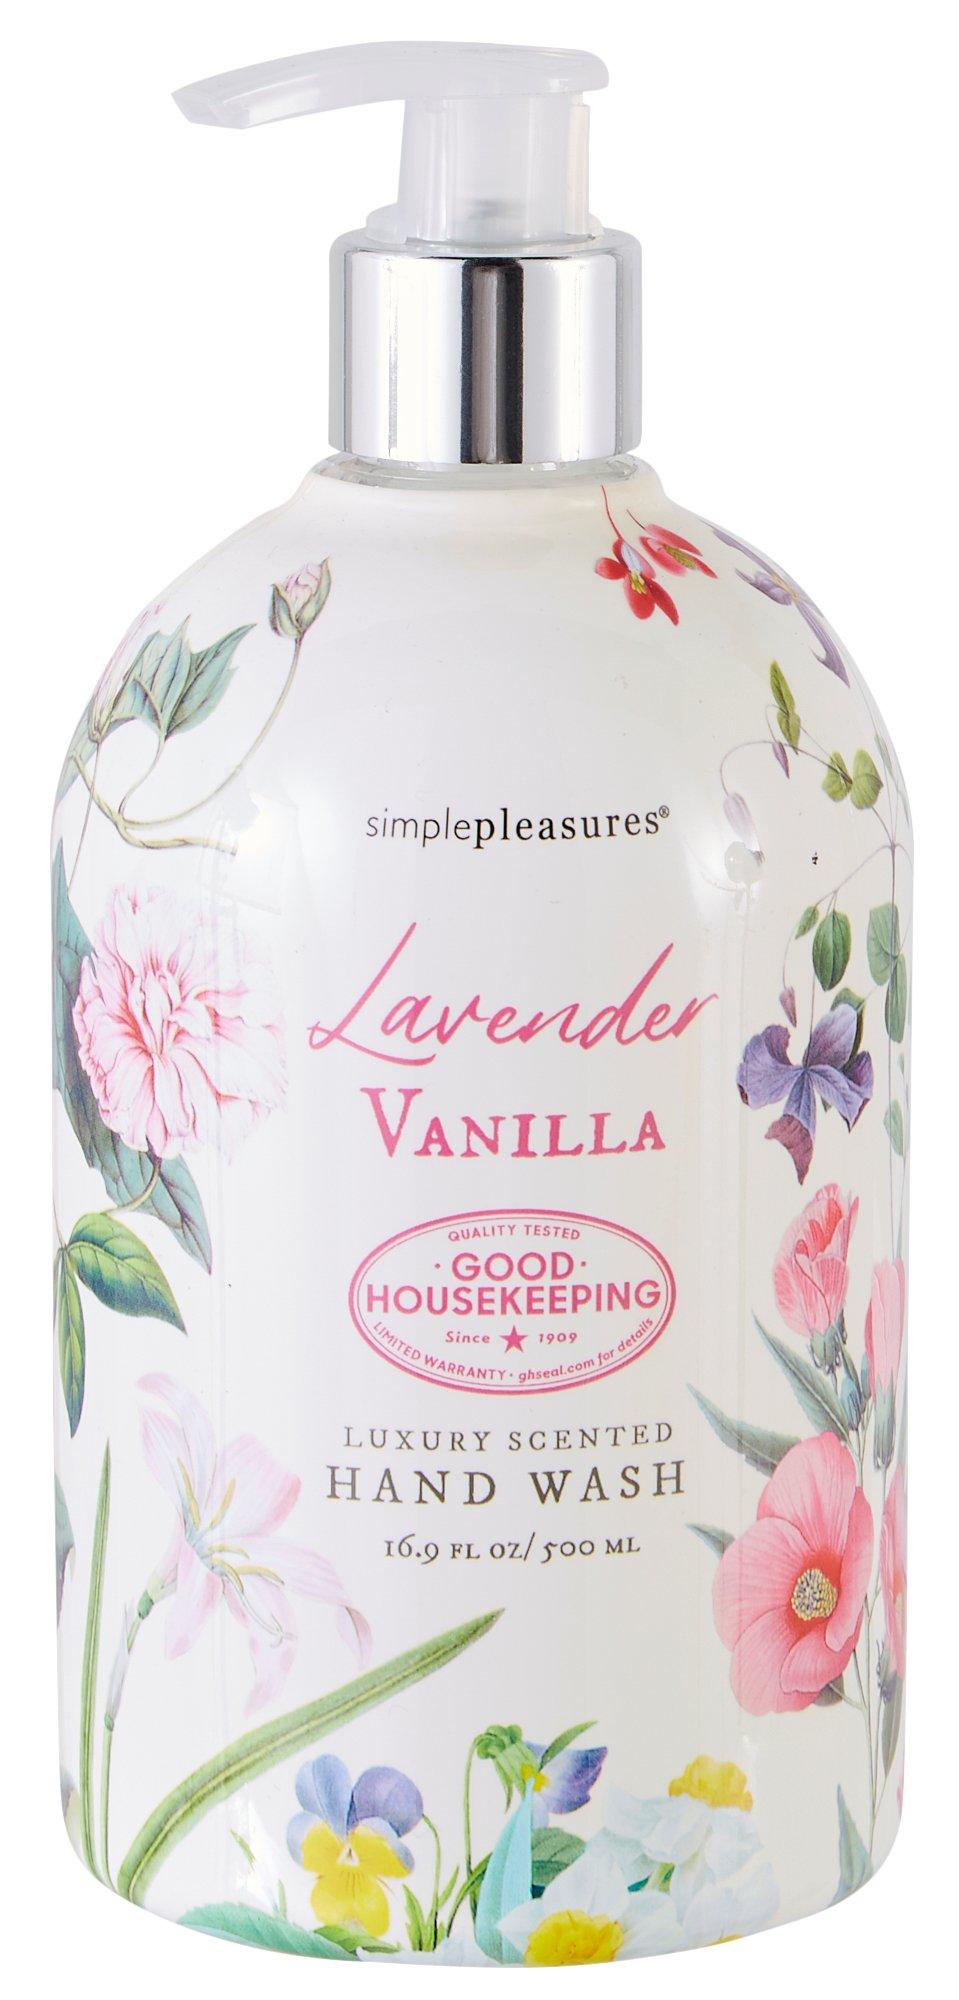 Lavender Vanilla Luxury Scented Hand Wash